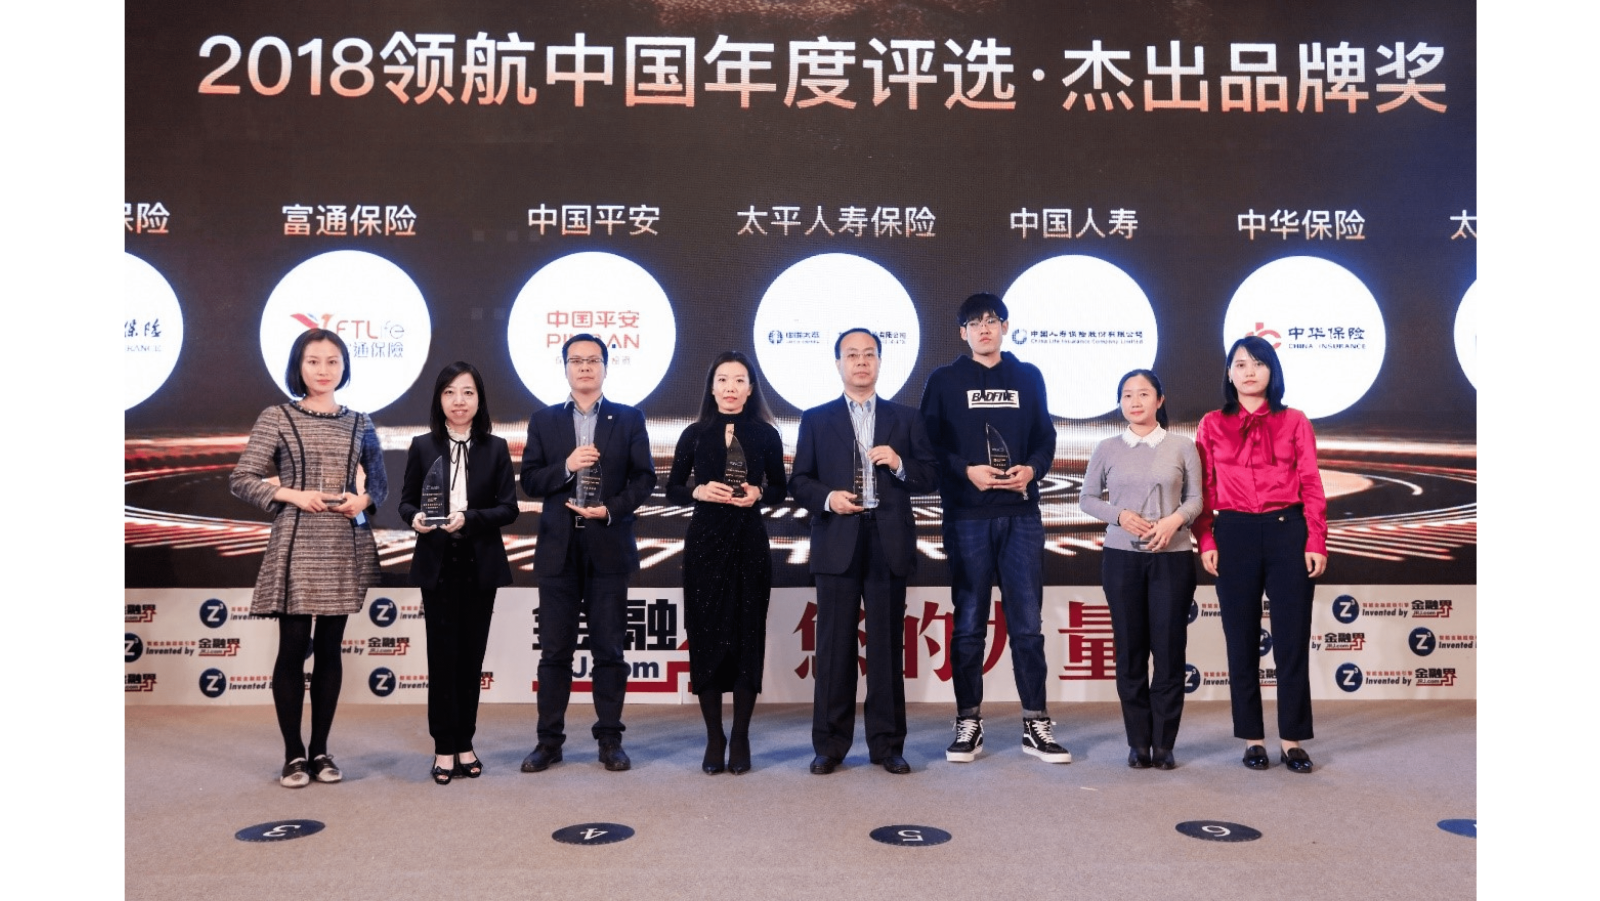 富通保险荣获2018领航中国年度评选”杰出香港保险品牌“大奖